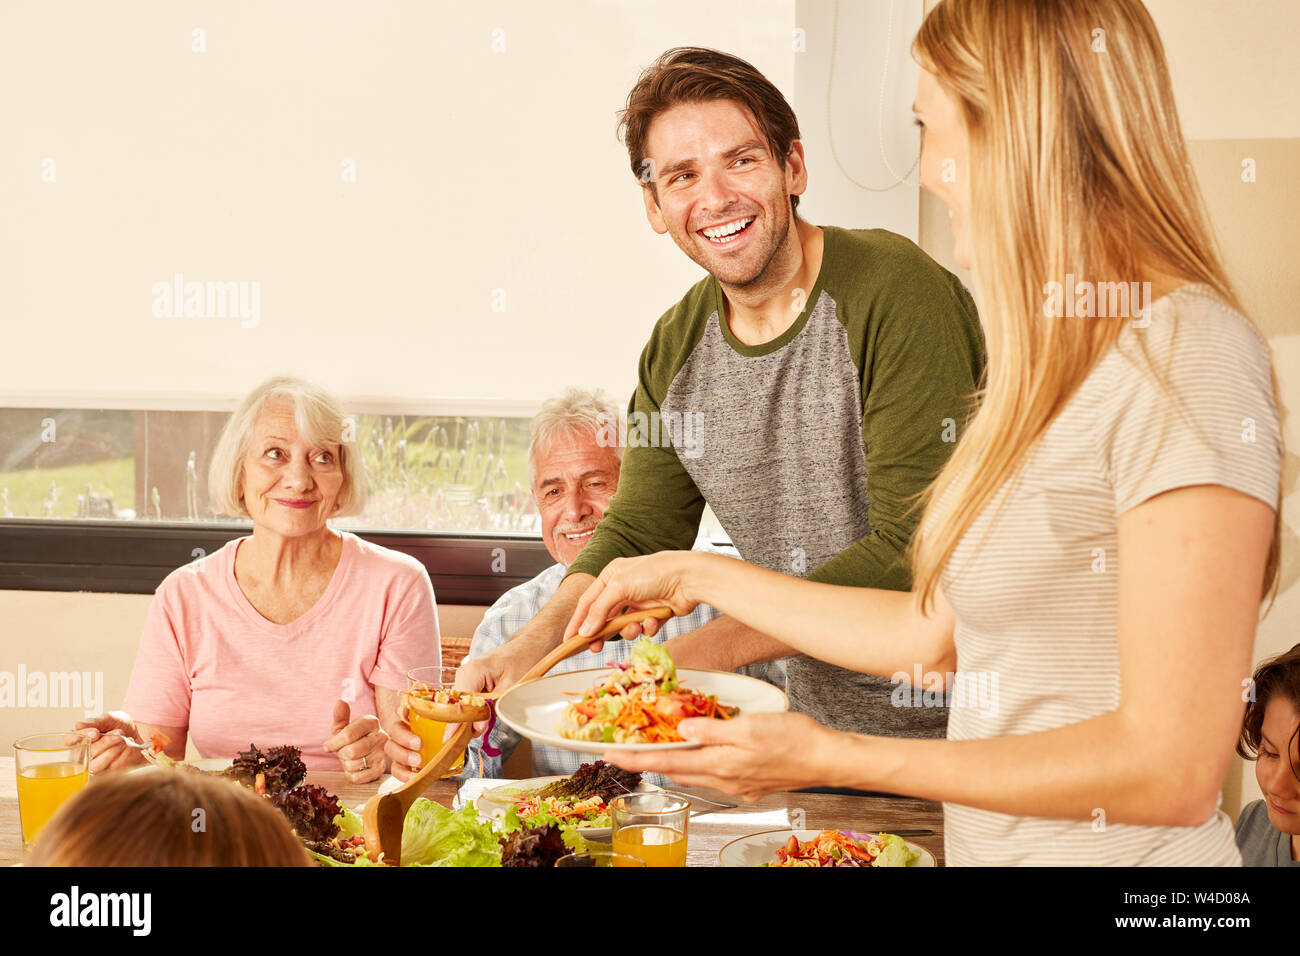 Glückliches Paar mit großeltern am Esstisch mit Mittag- oder Abendessen Stockfoto